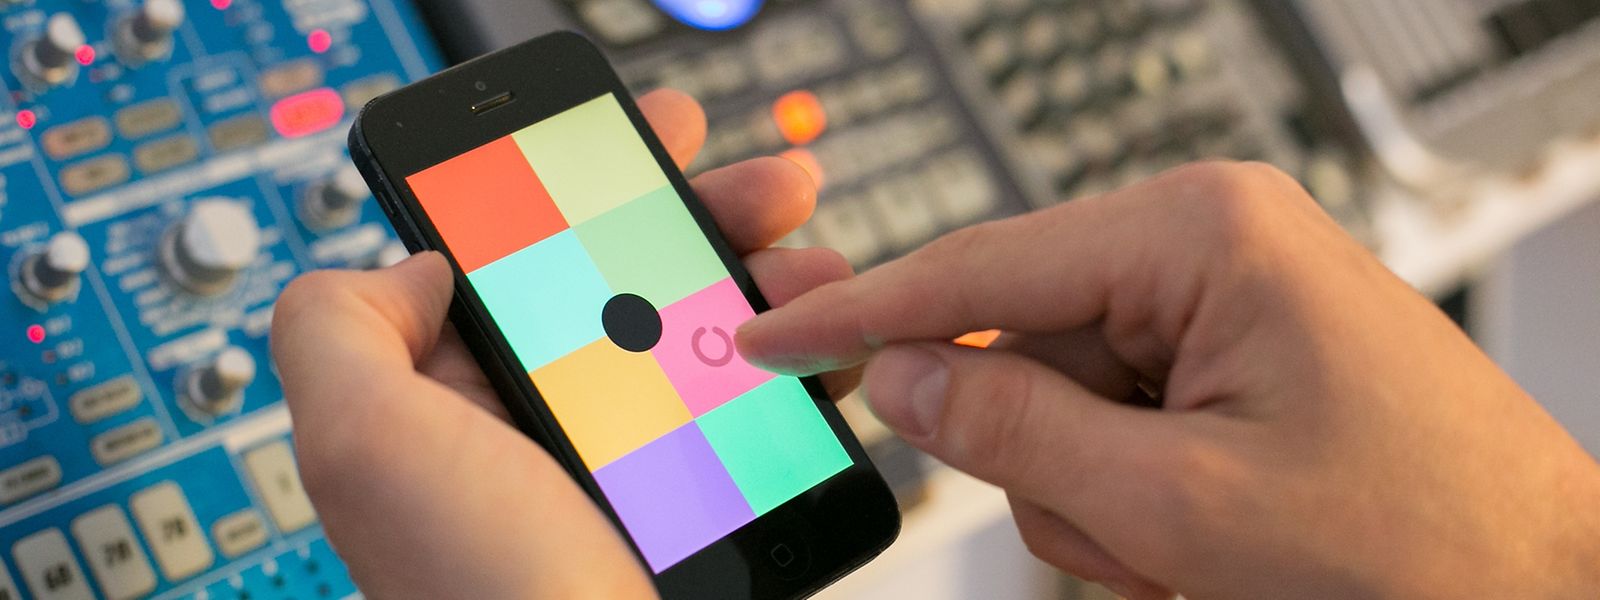 Einfacher geht's nicht: In jeder der acht farbigen Kacheln der Sampler-App Keezy kann ein aufgenommener Sound hinterlegt und dann abgespielt oder geloopt werden.